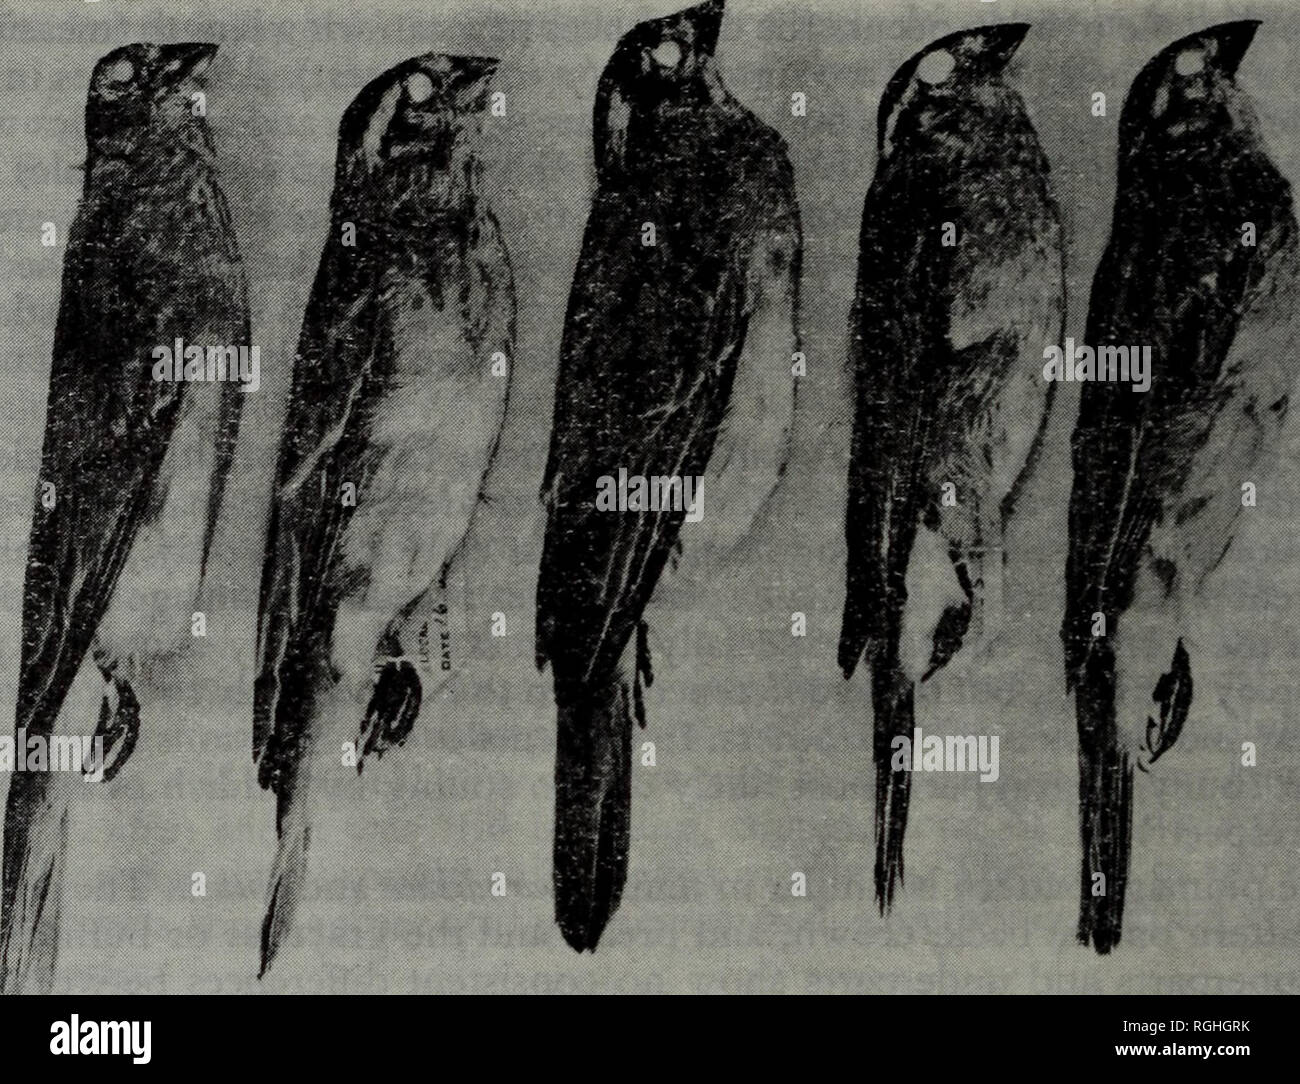 . Bulletin of the British Ornithologists' Club. . Fig. i. Femme whydahs paradis du sud, centre-sud, et en Afrique de l'Est. De gauche à droite : (a) 4386, obtusa de Tzaneen, Rhône-Alpes, (b) 4090, obtusa de Salujinga, Zambie, (c) 3976o paradisaeafrom hall en marbre, Rhône-Alpes, (d) 4476, paradisaea de Sabi Valley, la Rhodésie, (e) 4748, paradisaea de Olorgesailie, au Kenya. Remarque la loi plus sombre et distinctes dans la tête paradisaea. &Gt ;&gt ;. Veuillez noter que ces images sont extraites de la page numérisée des images qui peuvent avoir été retouchées numériquement pour plus de lisibilité - coloration et l'apparence Banque D'Images